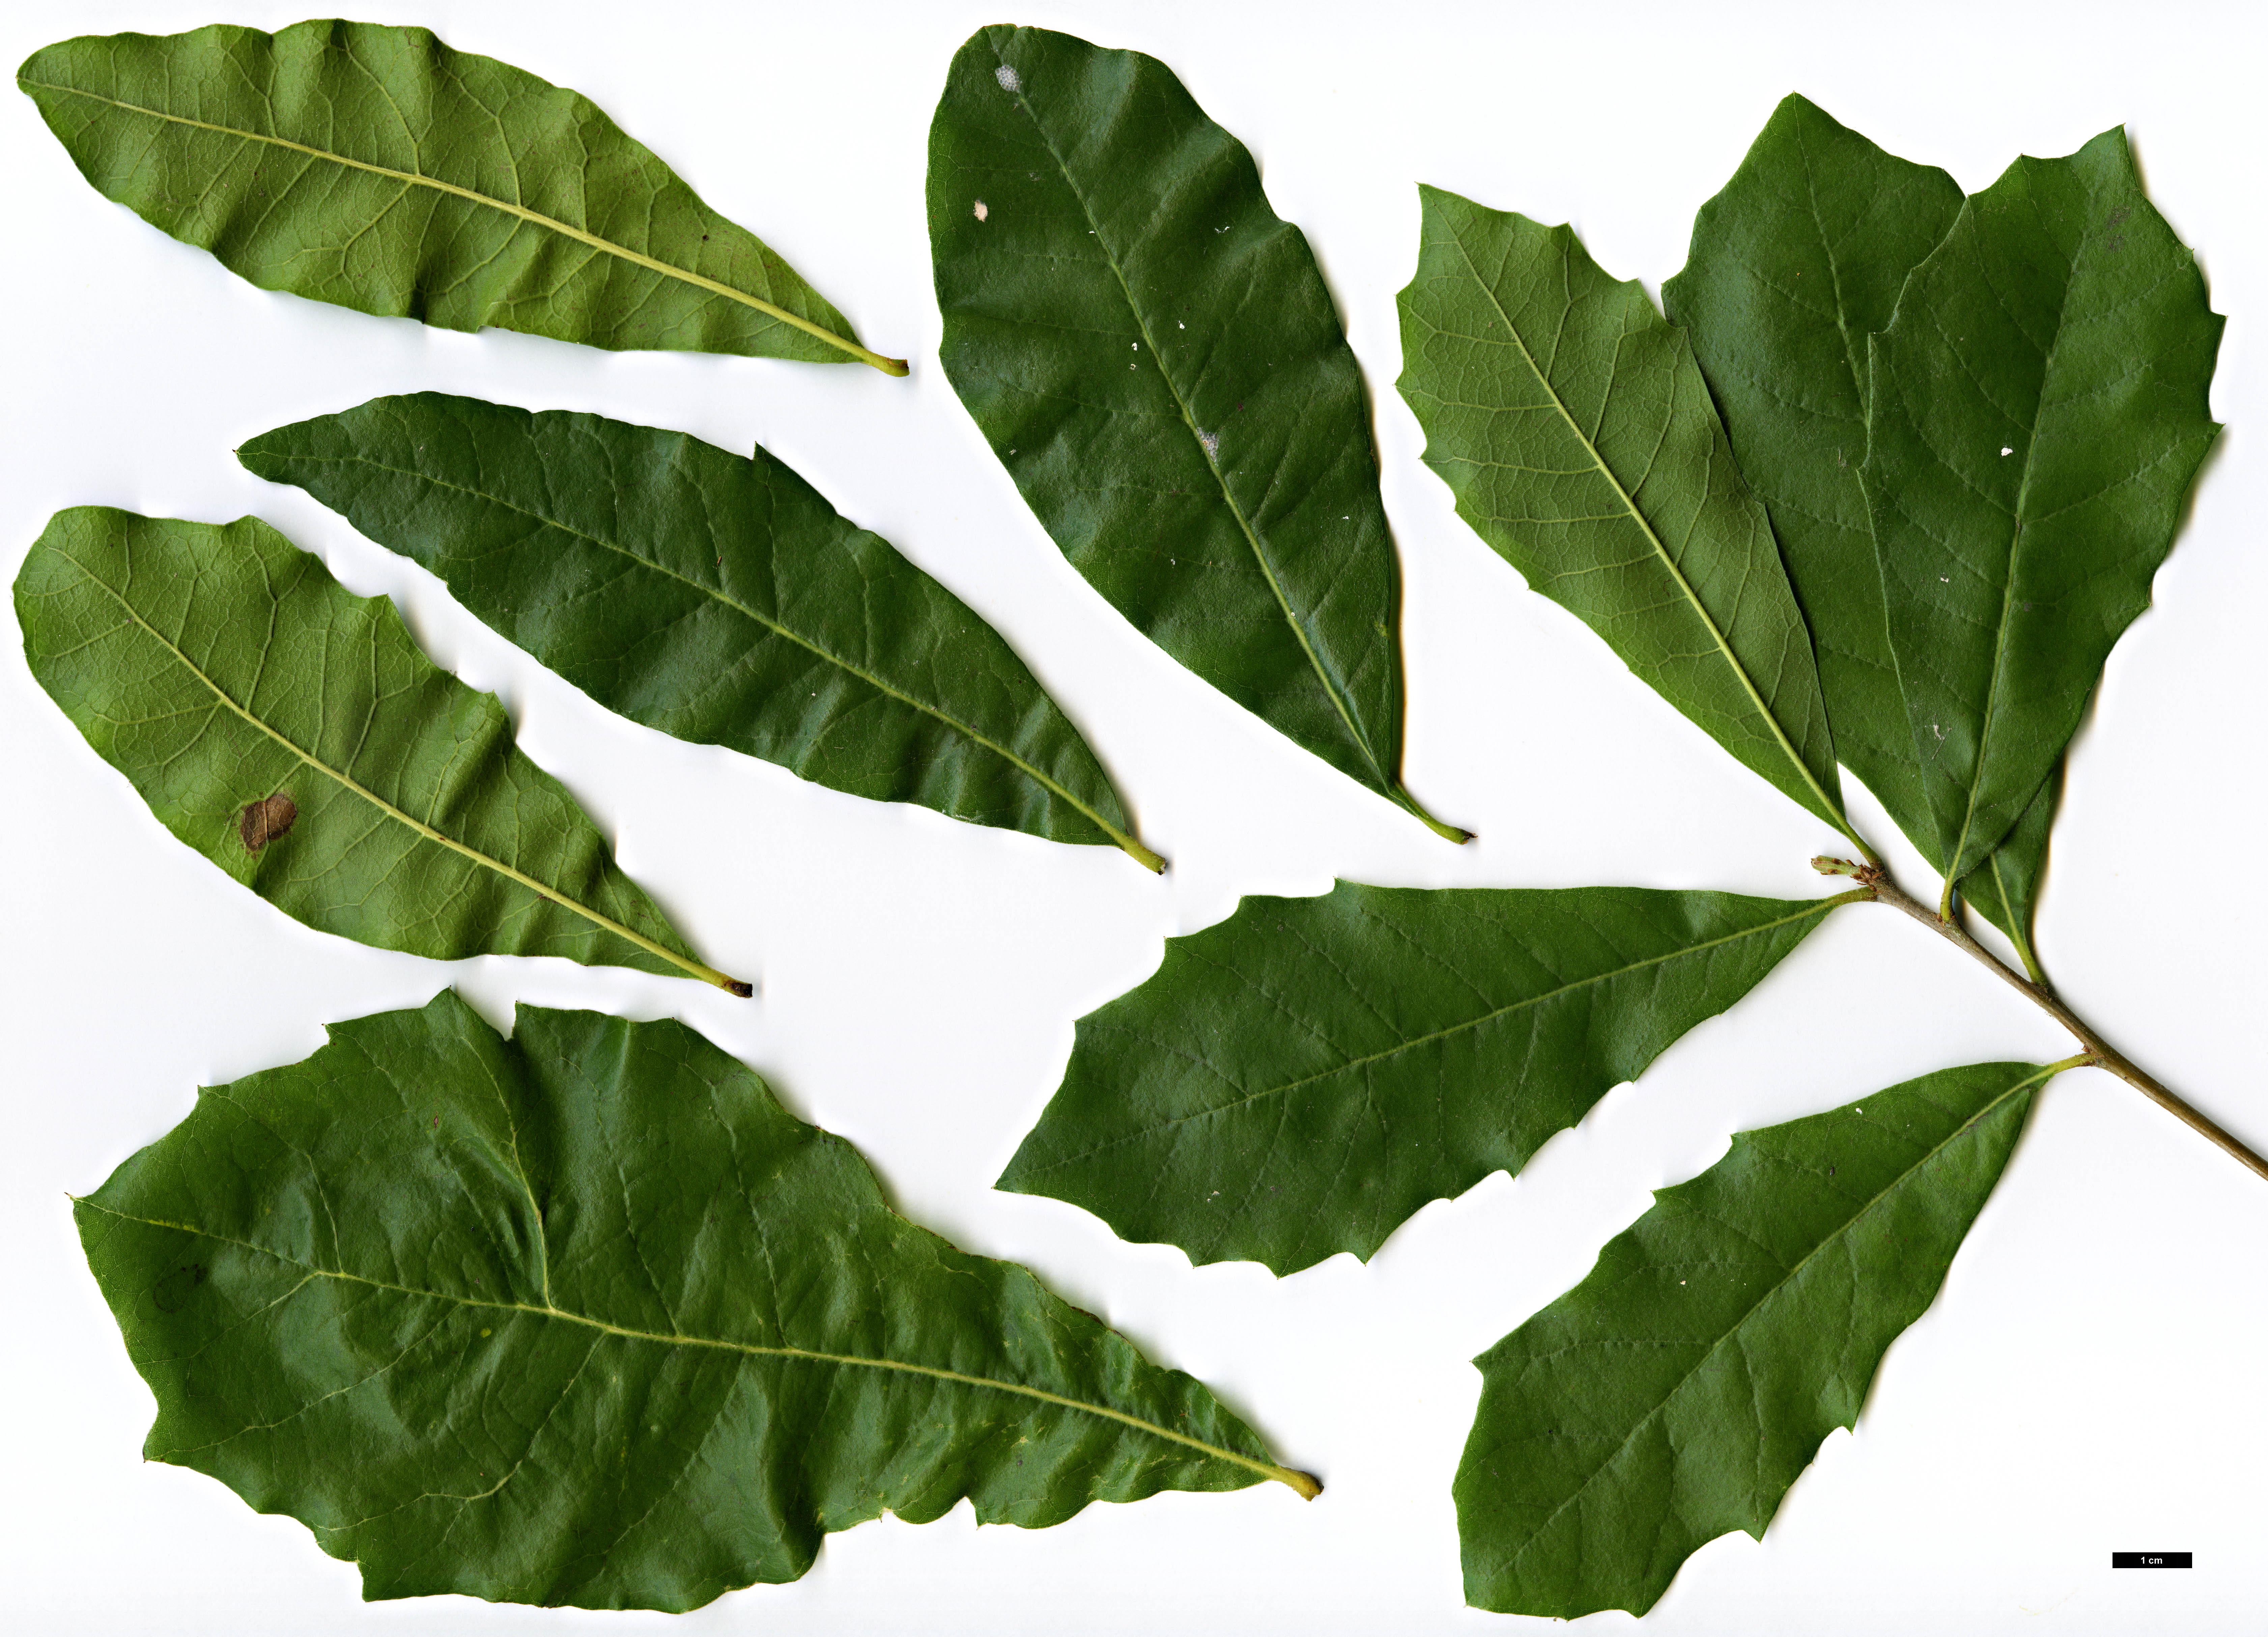 High resolution image: Family: Fagaceae - Genus: Quercus - Taxon: oleoides - SpeciesSub: subsp. sagraeana